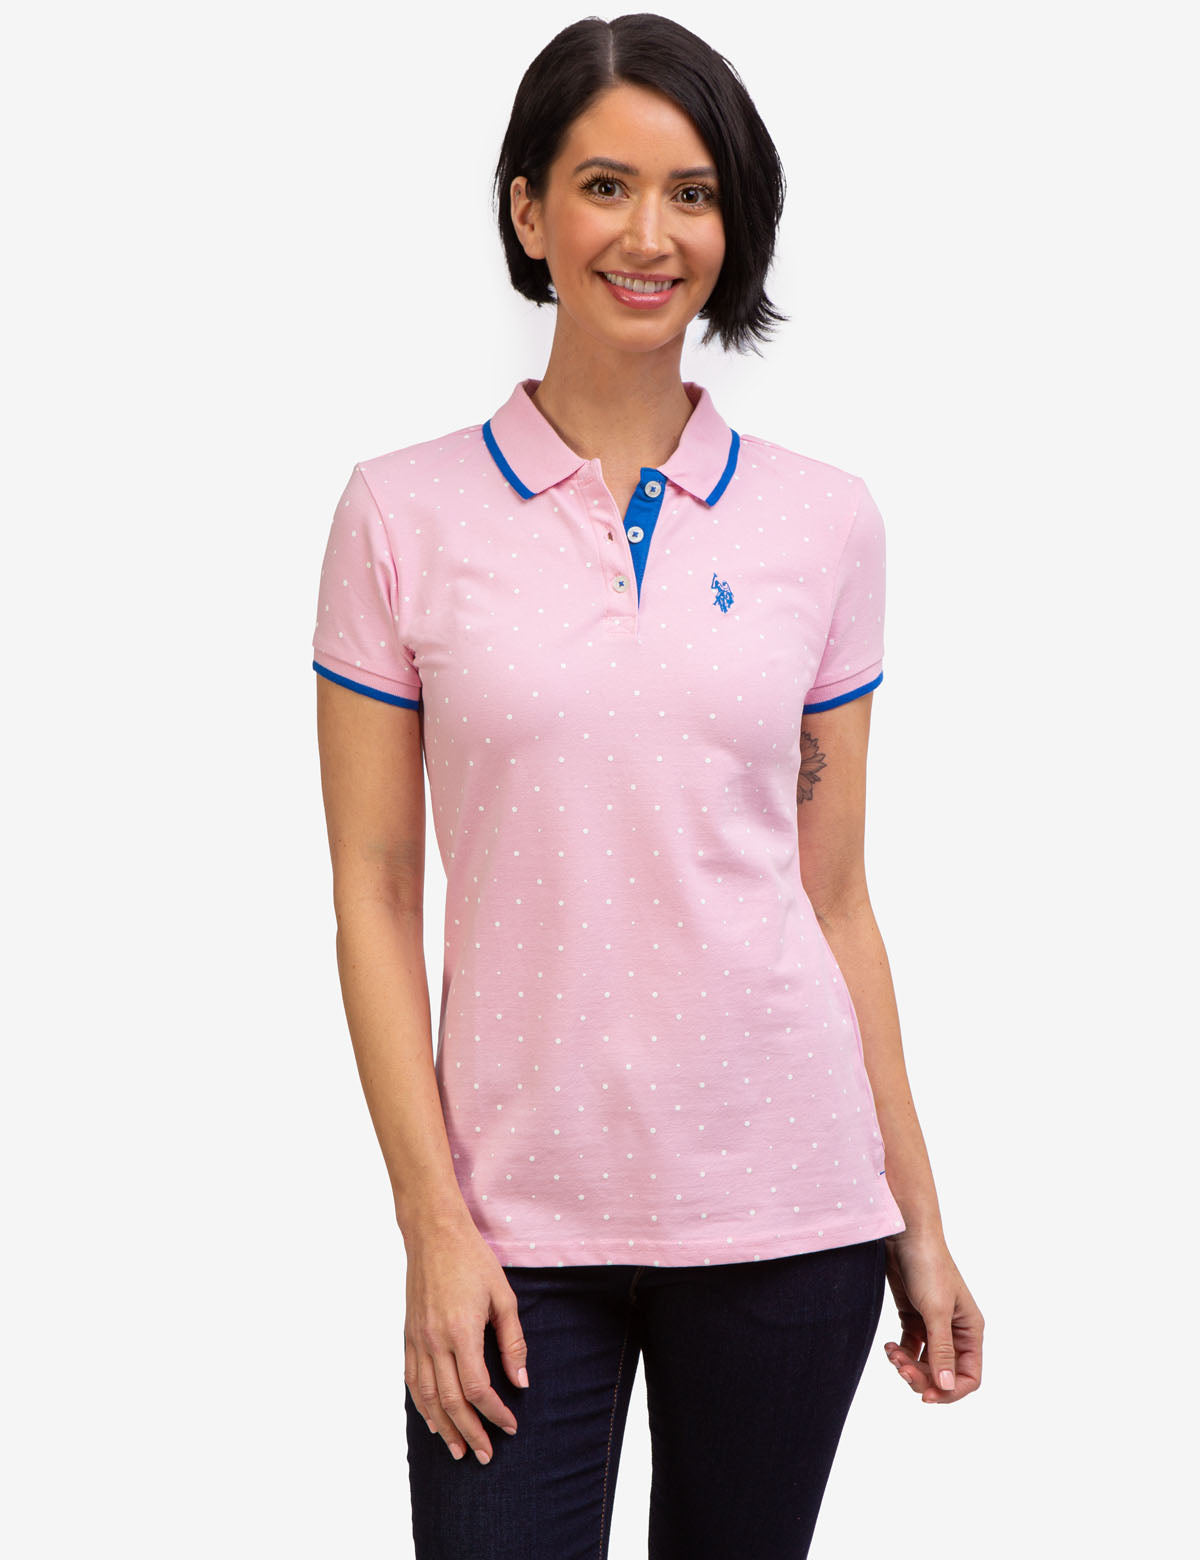 US Polo Assn. Classic Polo Dot Pique Short Sleeve Shirt, Women's 